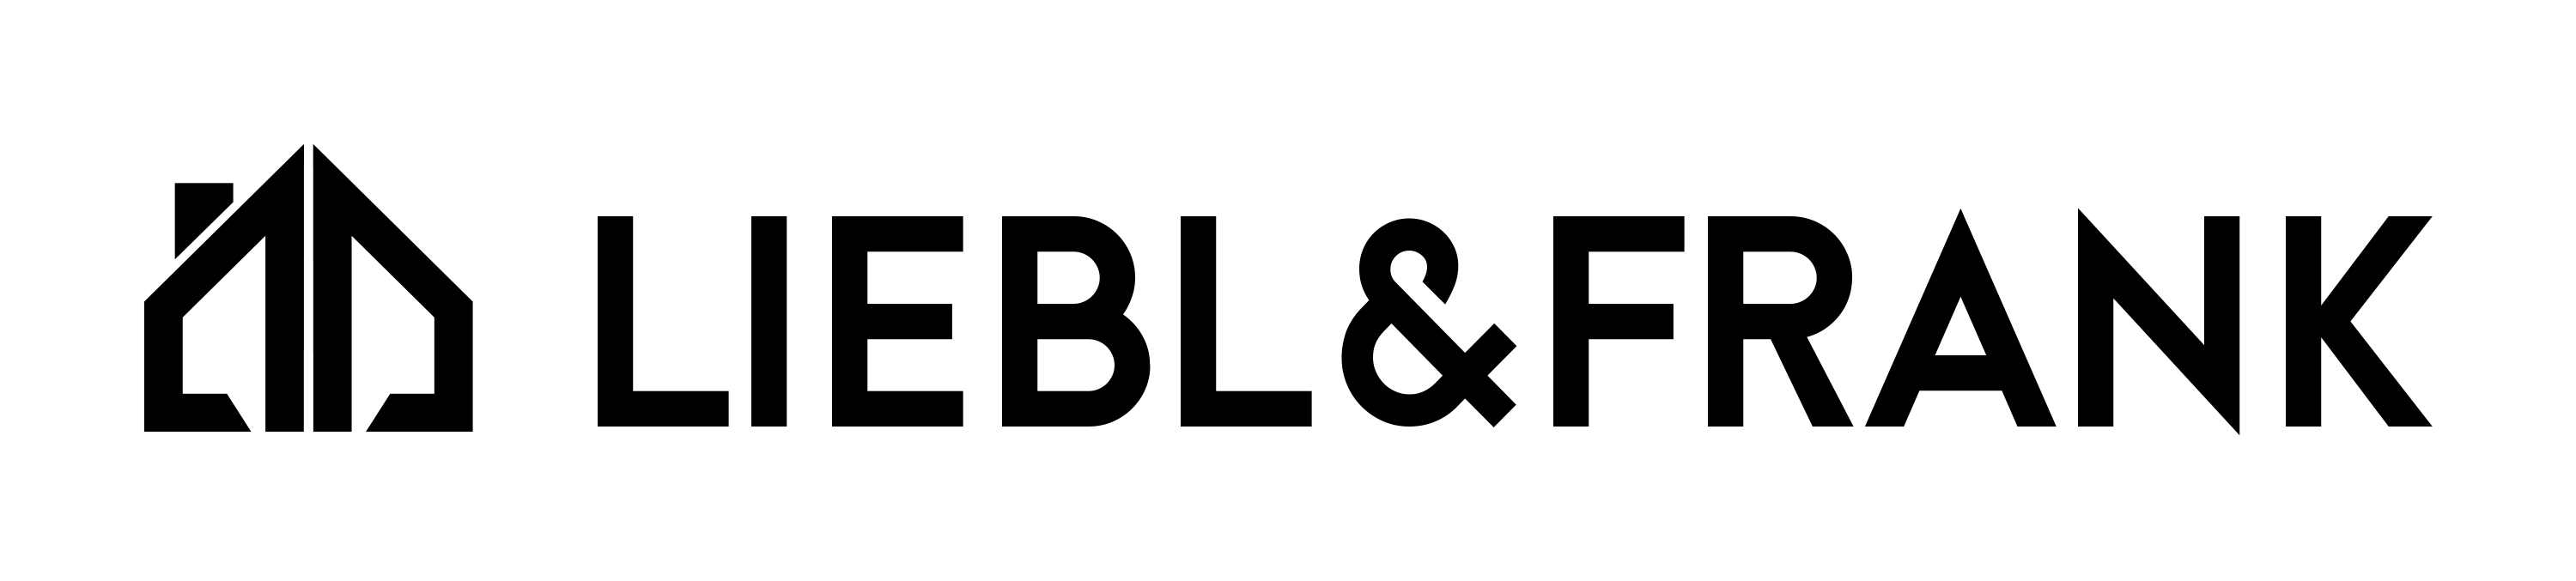 Logo von Liebl & Frank groß in Schwarz